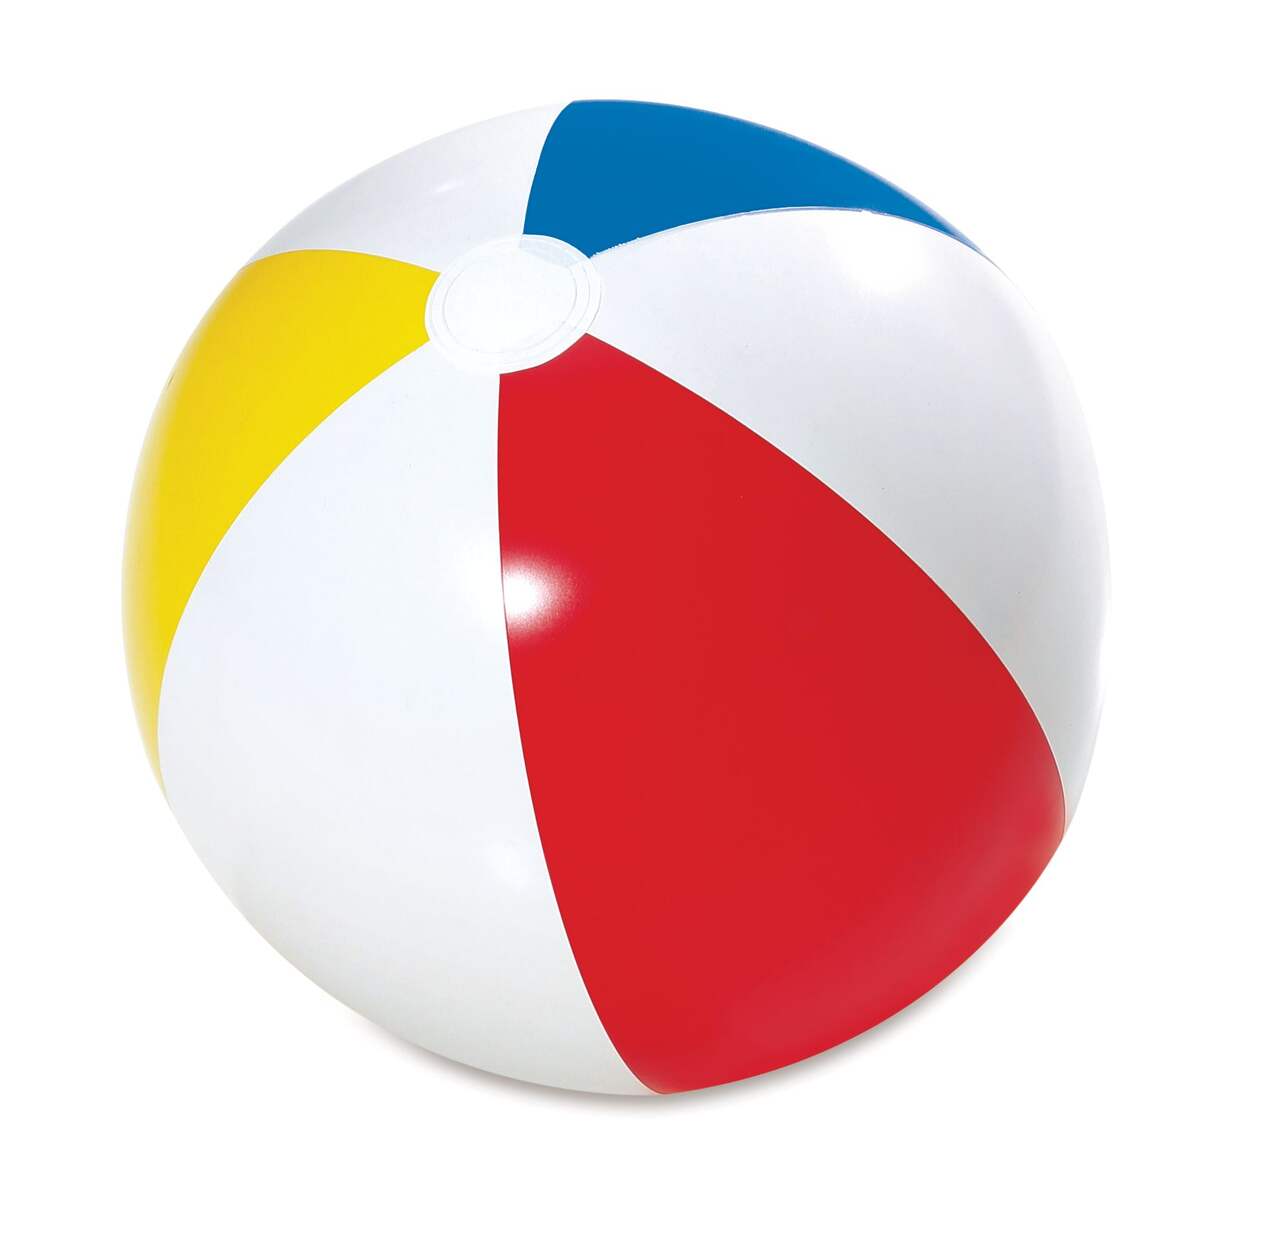 Ballon de plage gonflable de 100cm pour enfant, jouet de bain, piscine  extérieure d'été